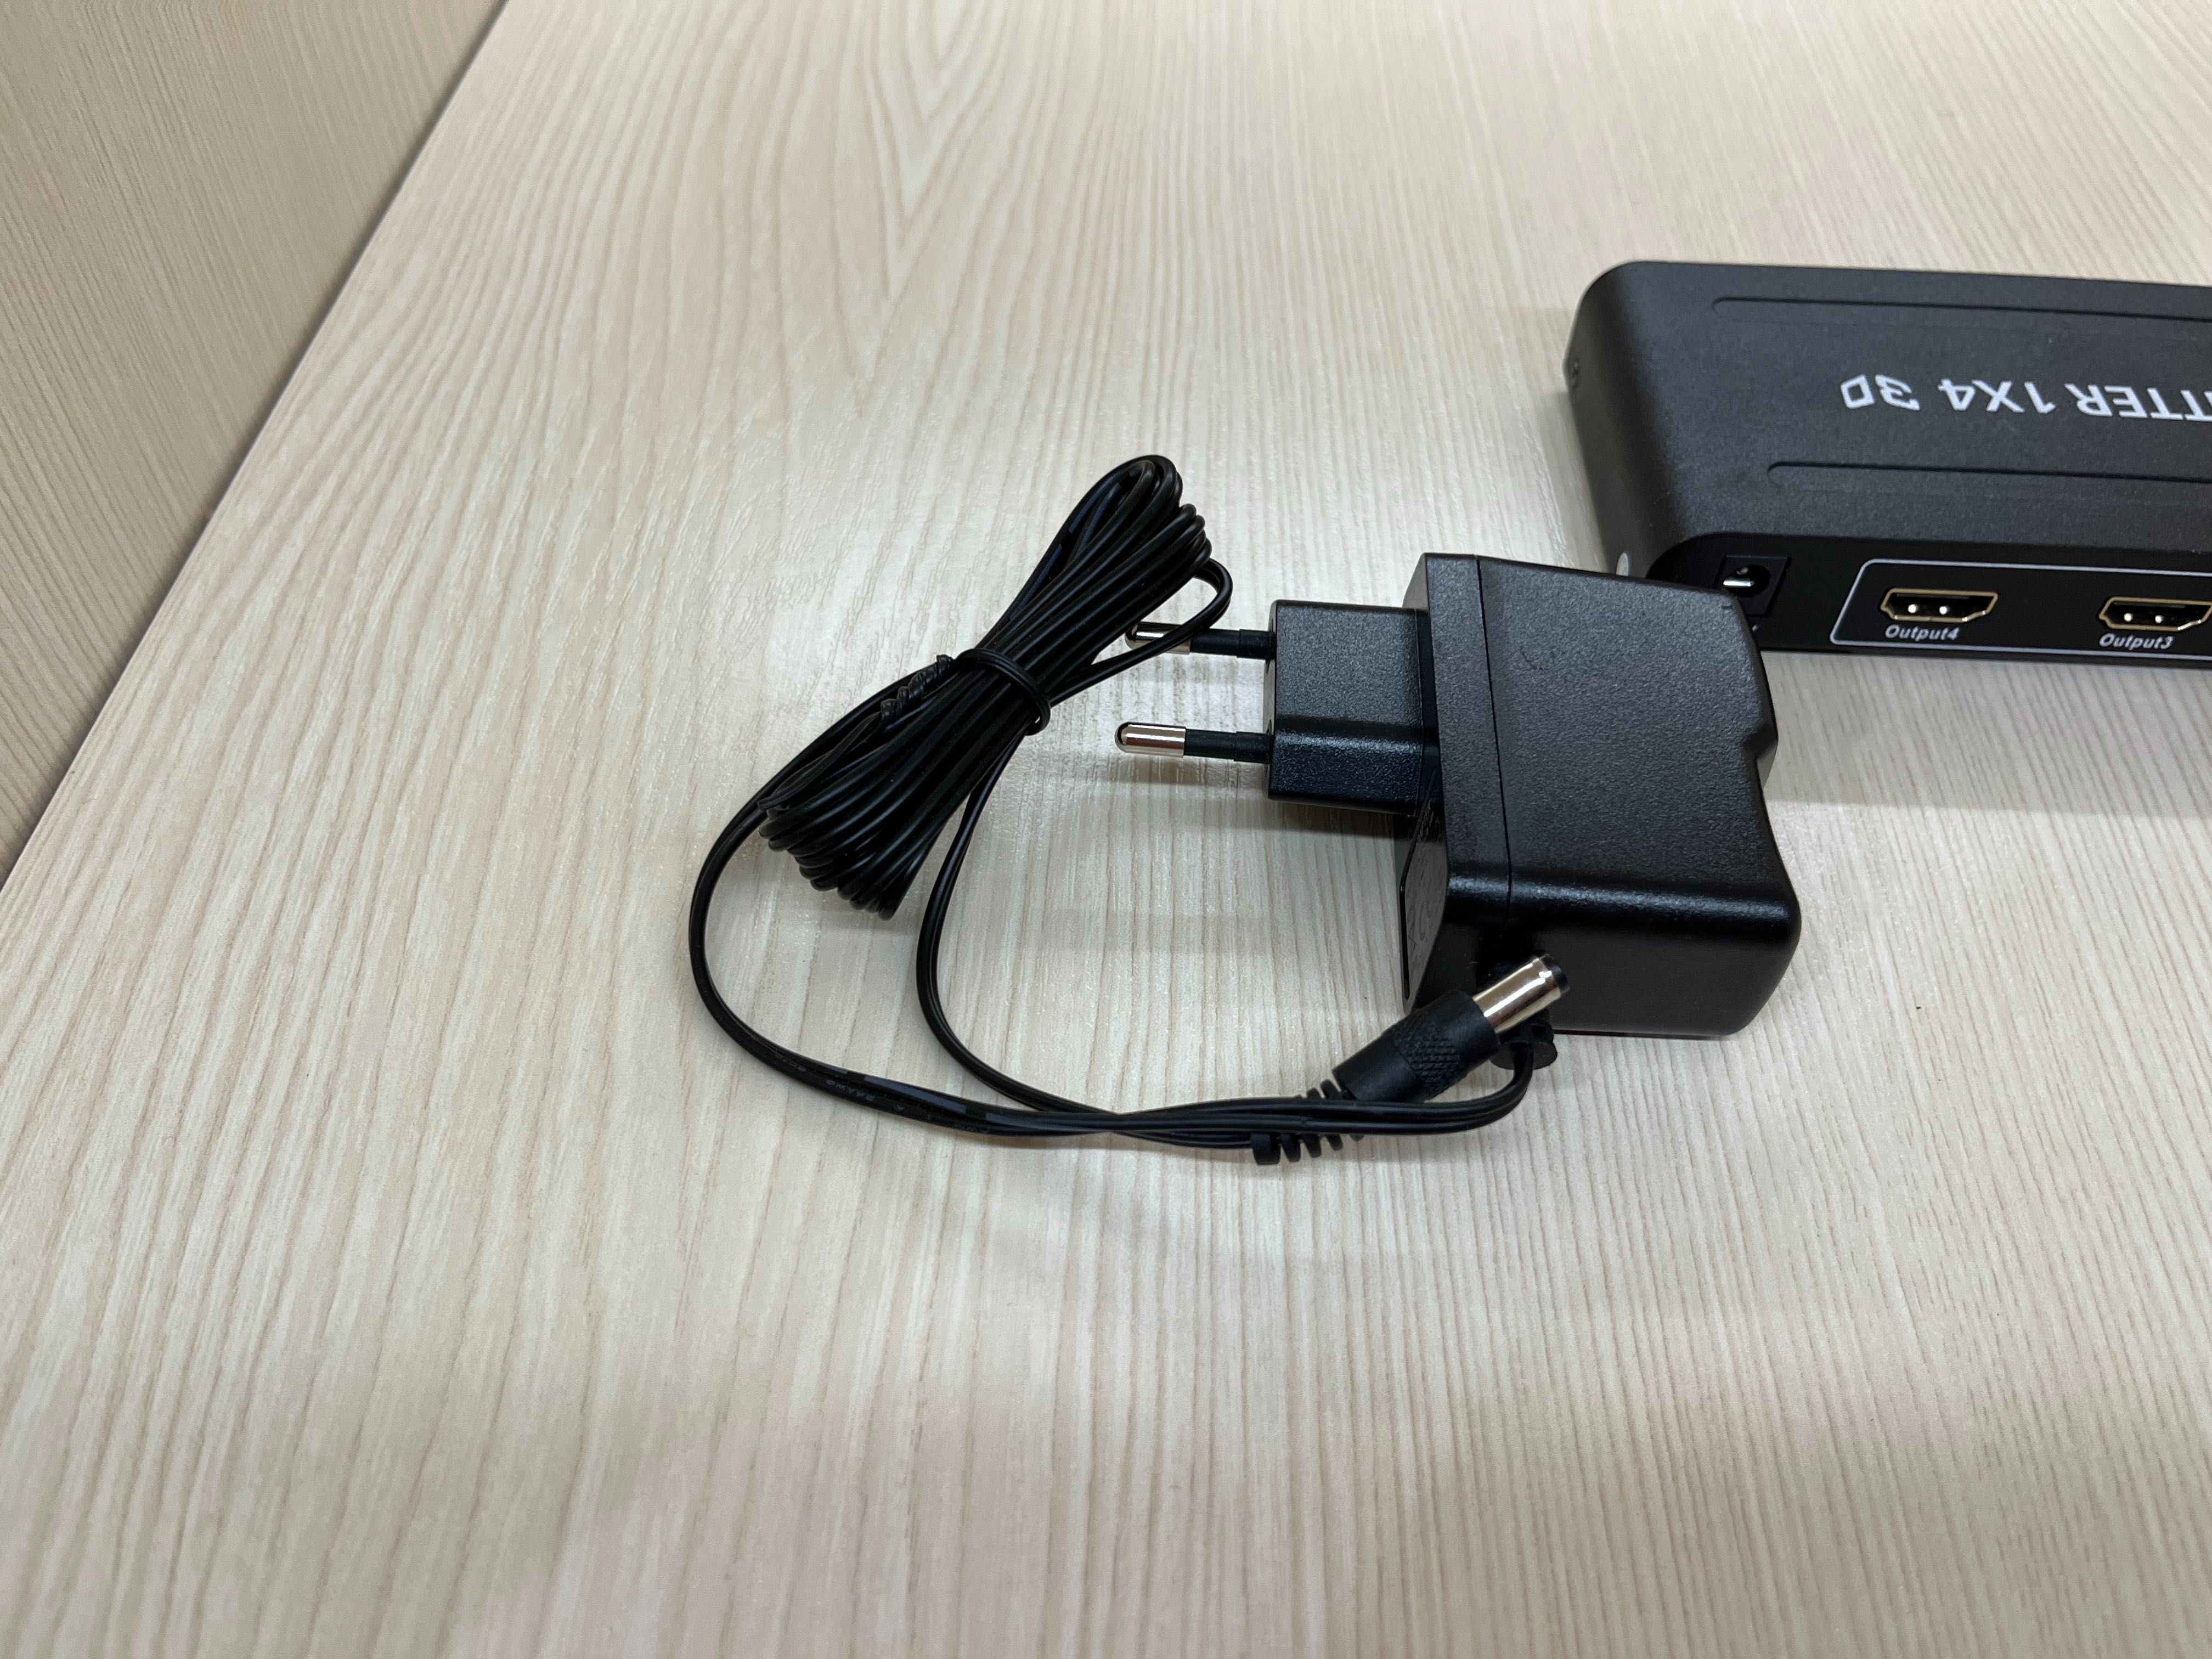 HDMI Splitter 1x4 obrazu i dźwięku - używany + gratis